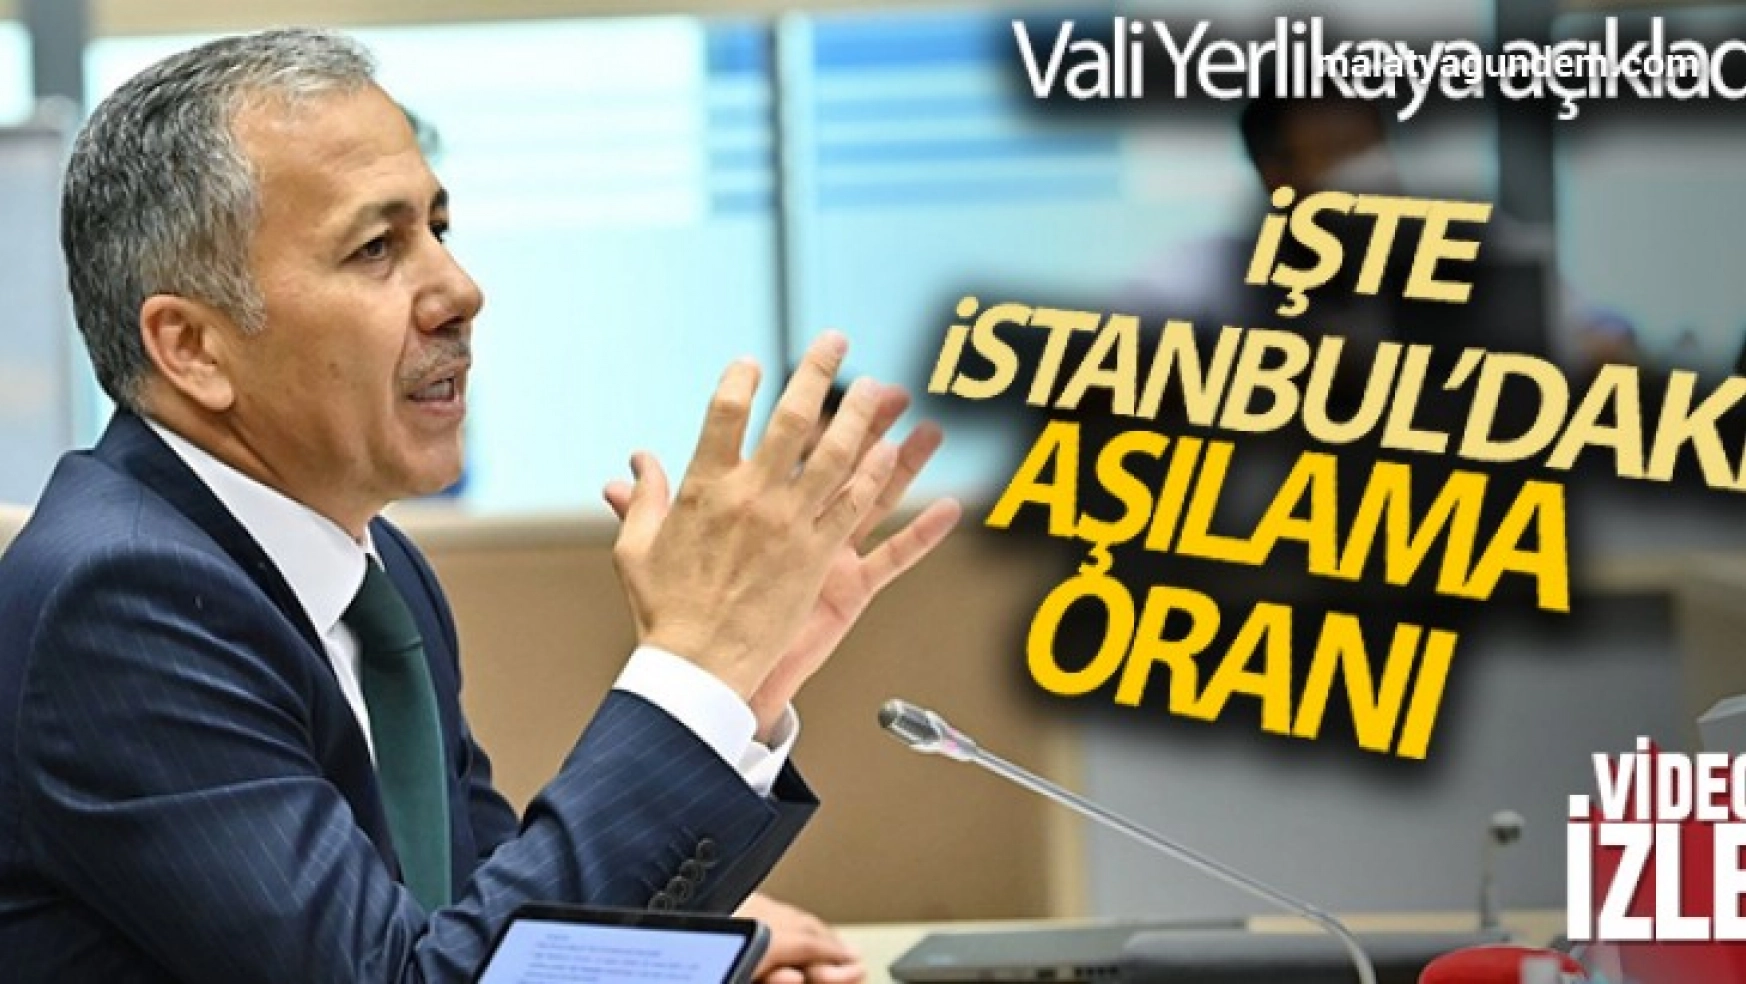 Vali Yerlikaya, İstanbul'daki aşılama oranlarını açıkladı